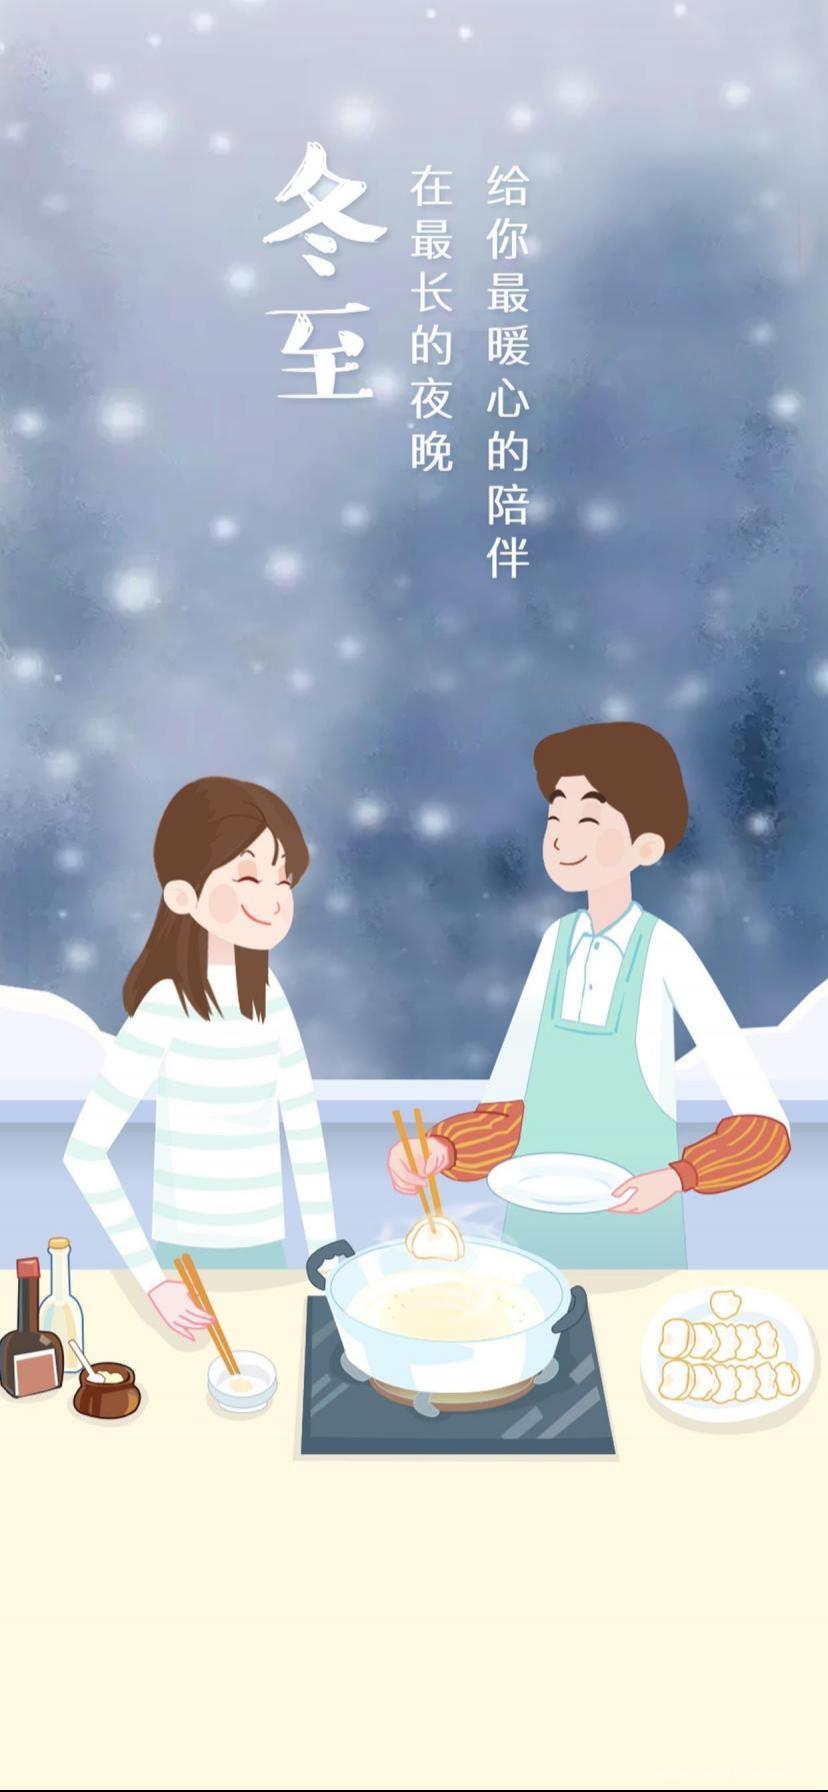 冬至煮水饺温馨画面卡通壁纸图片